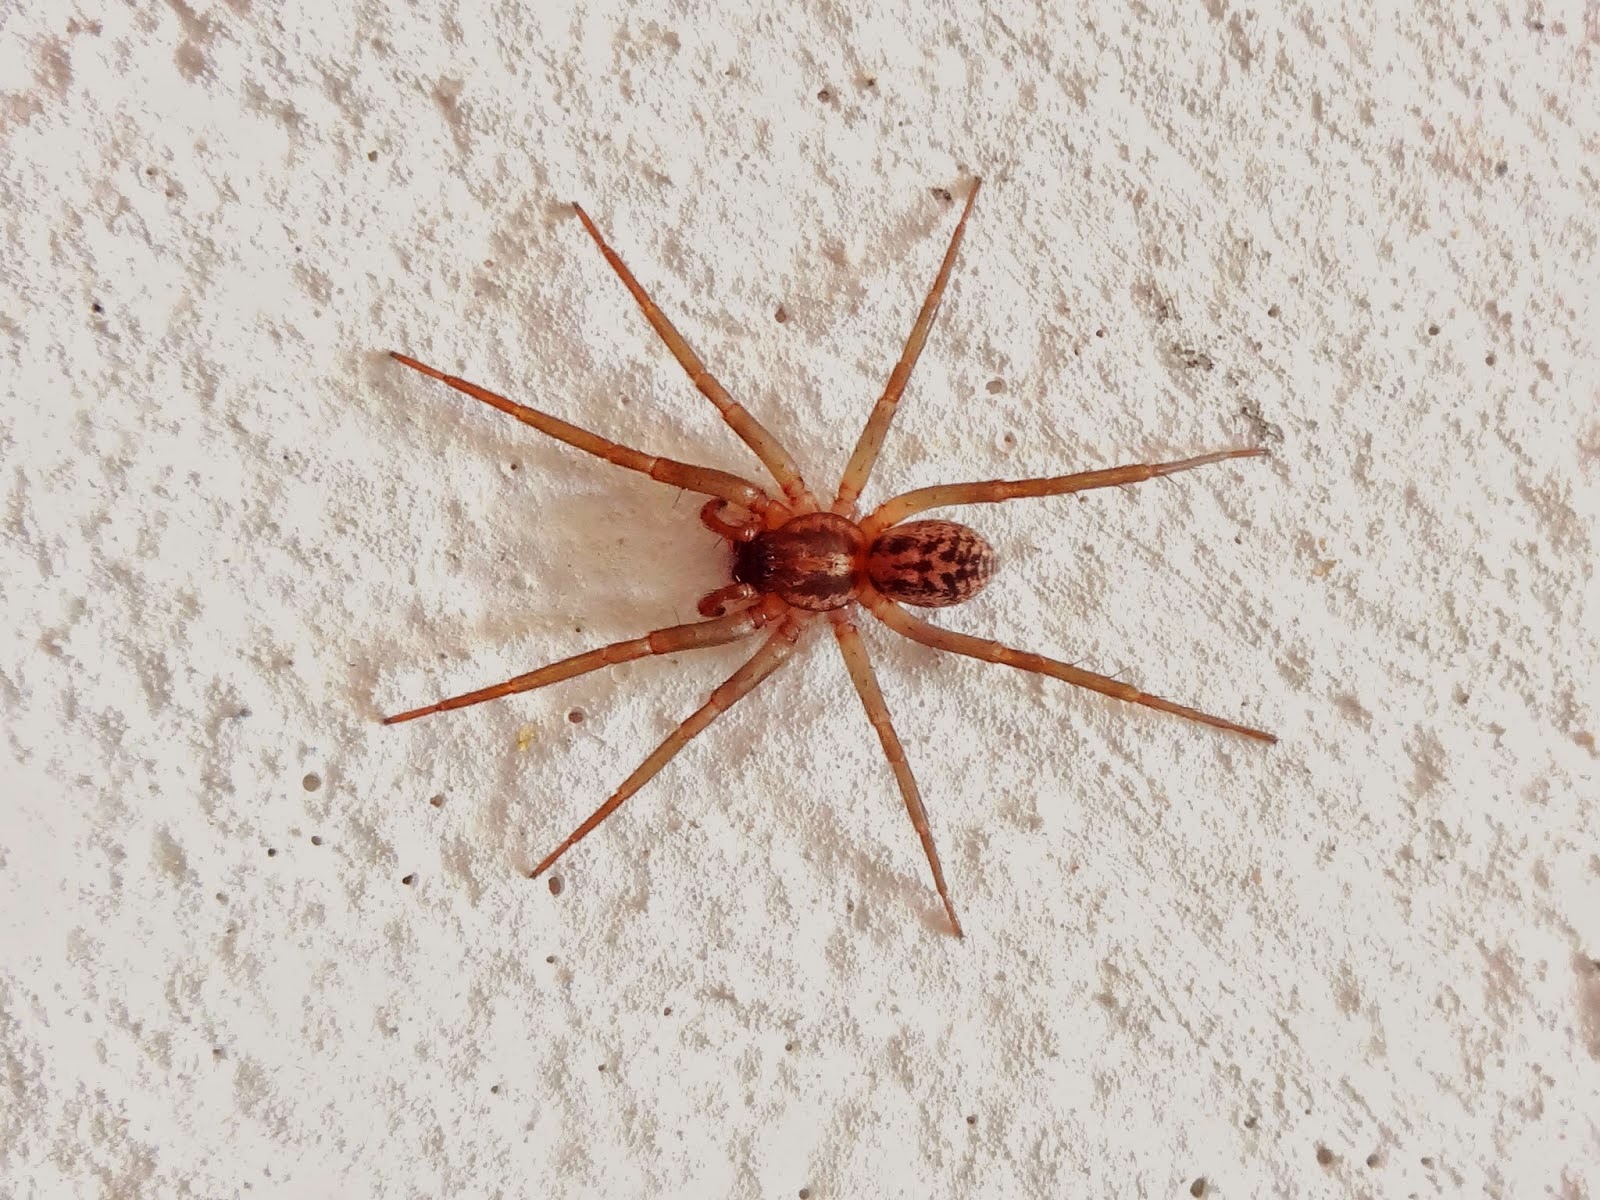 Araneae (grego: arachne; "aranha")